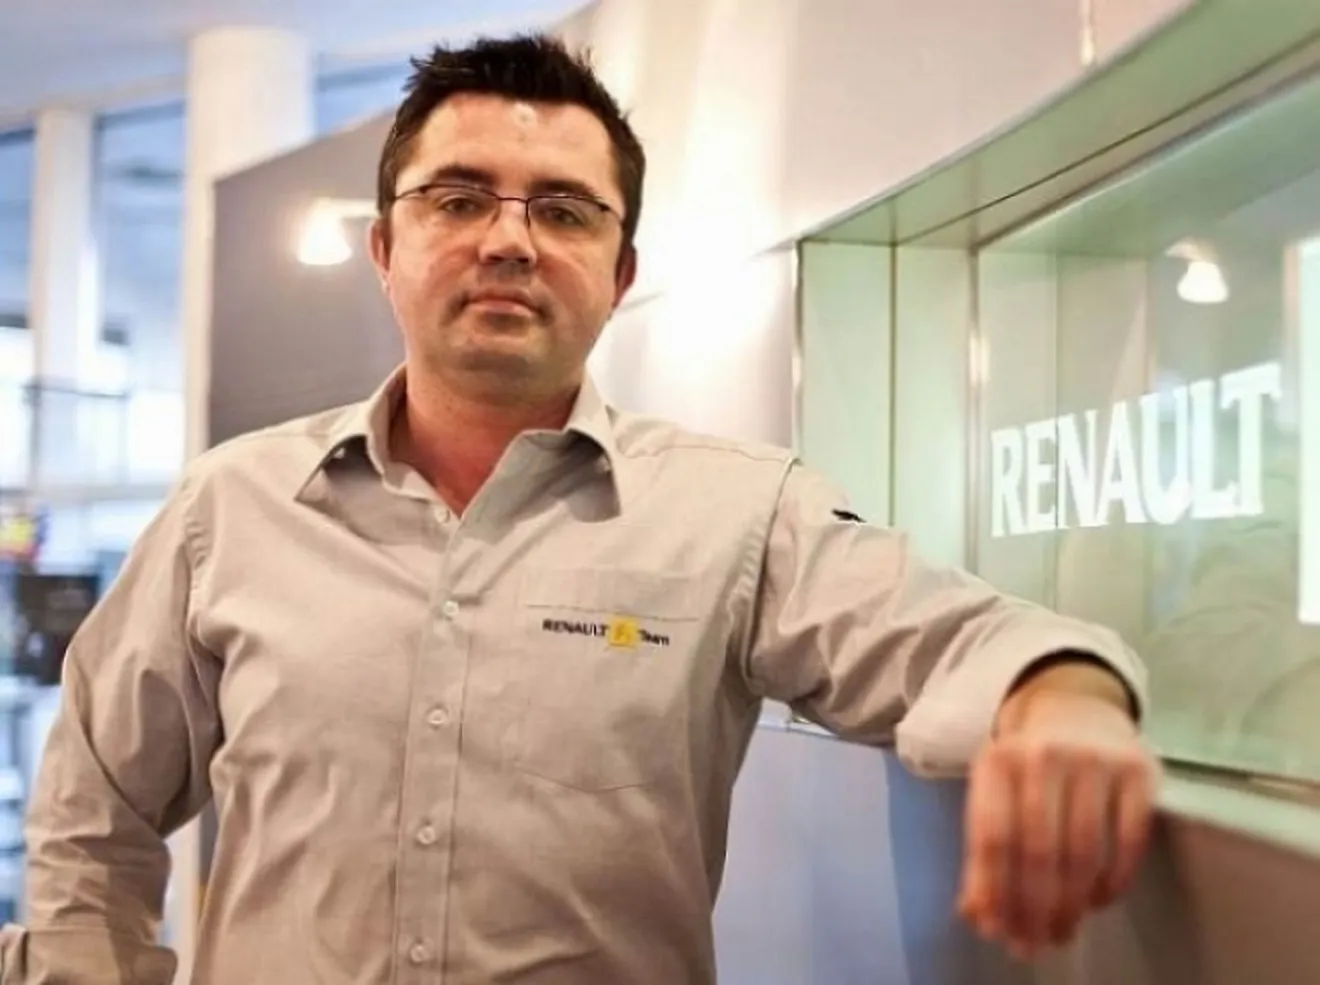 Oficial: el nuevo jefe de equipo de Renault Eric Boullier